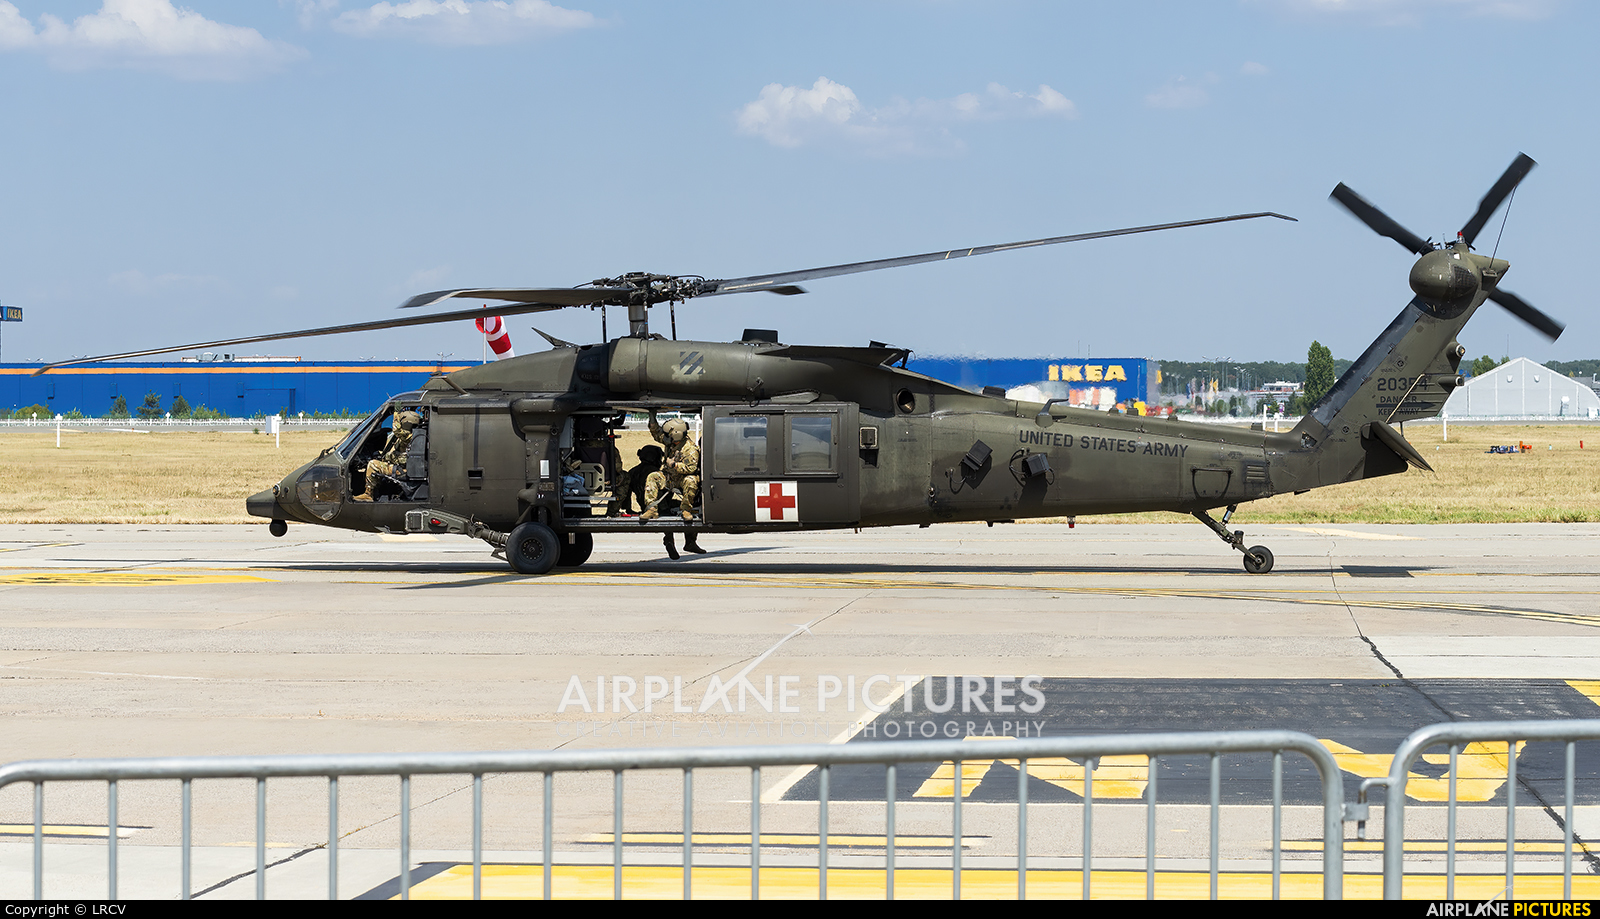 USA - Army 11-20354 aircraft at Bucharest - Aurel Vlaicu Intl